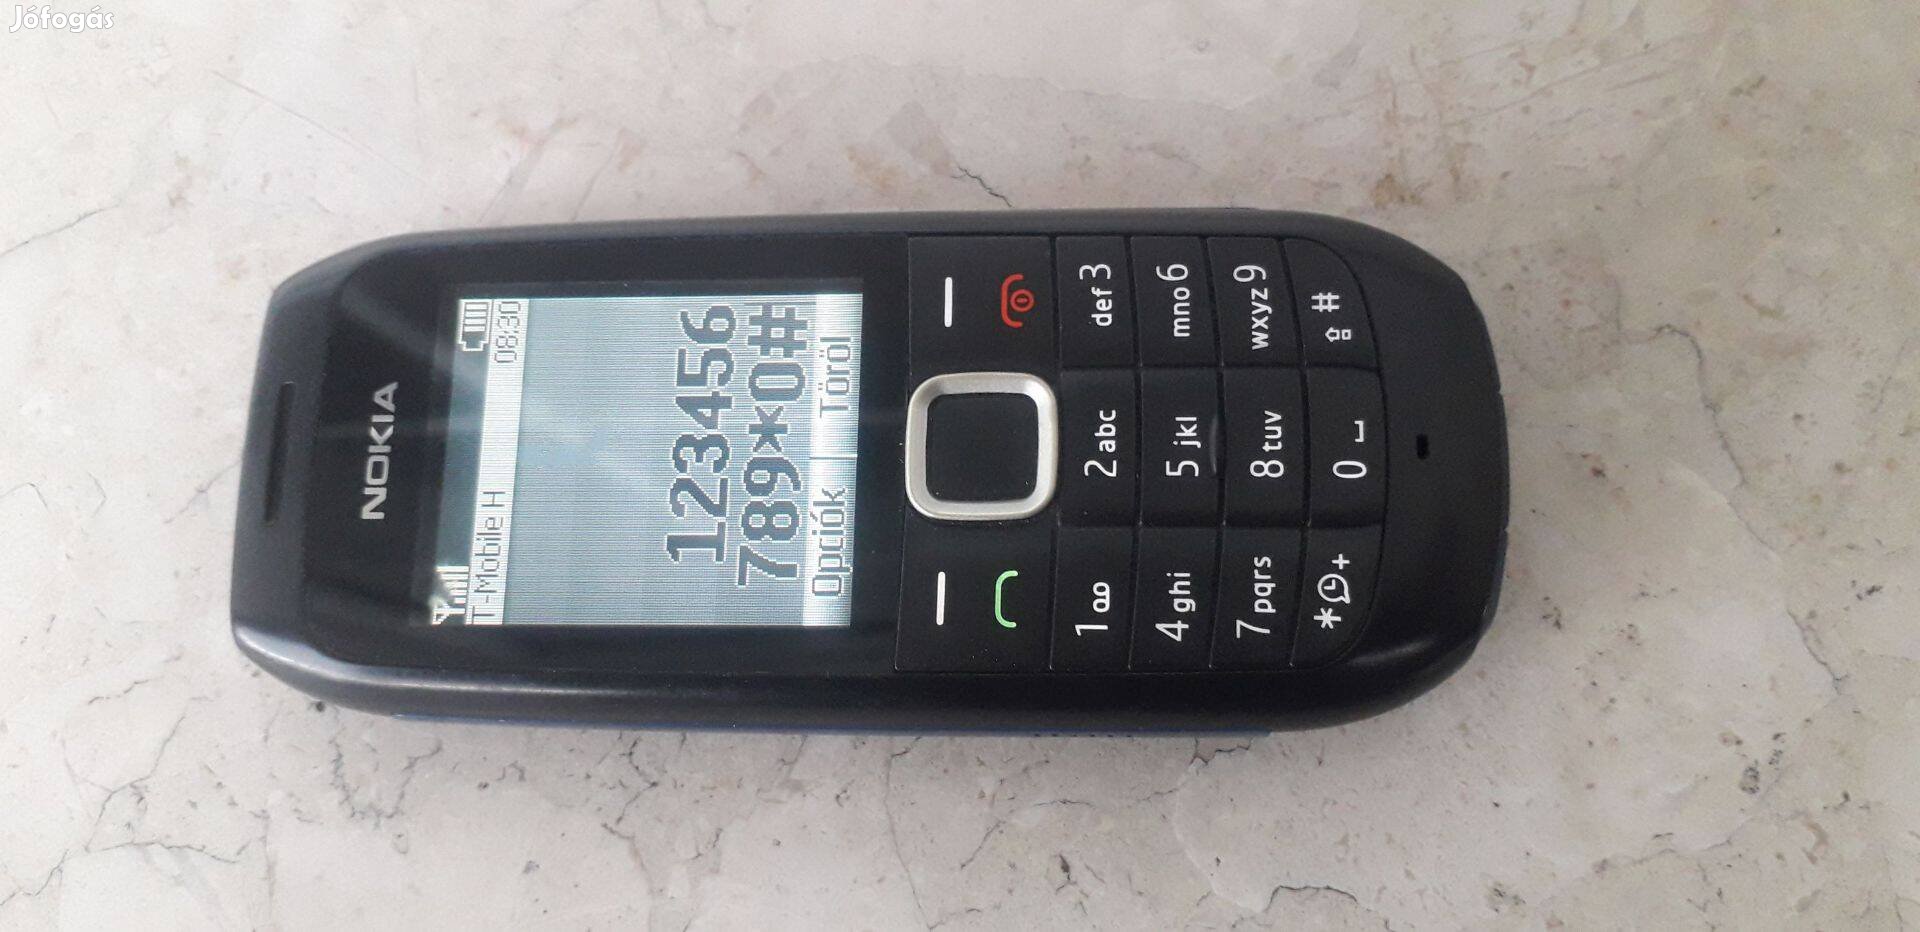 Nokia 1616 mobiltelefon (Telekom függő)